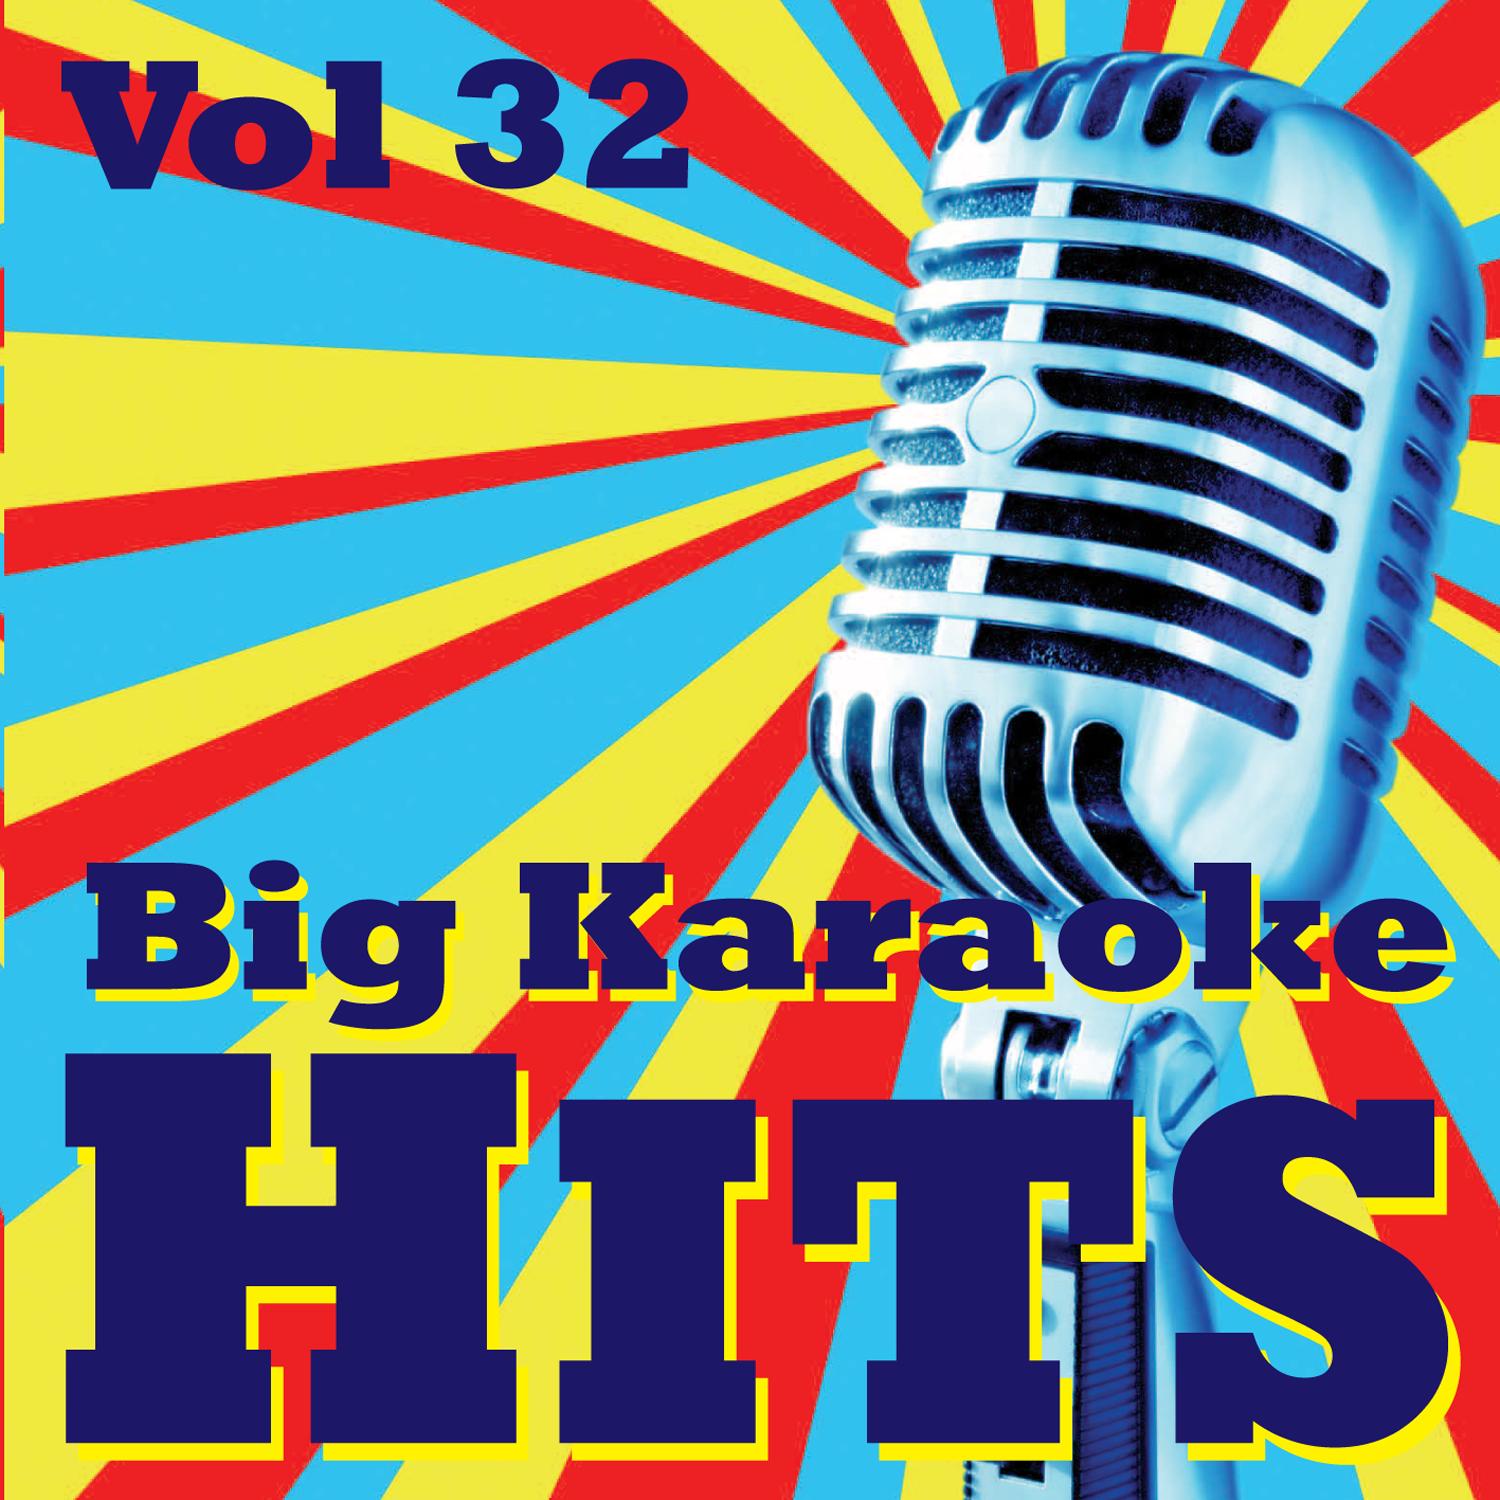 Big Karaoke Hits Vol.32